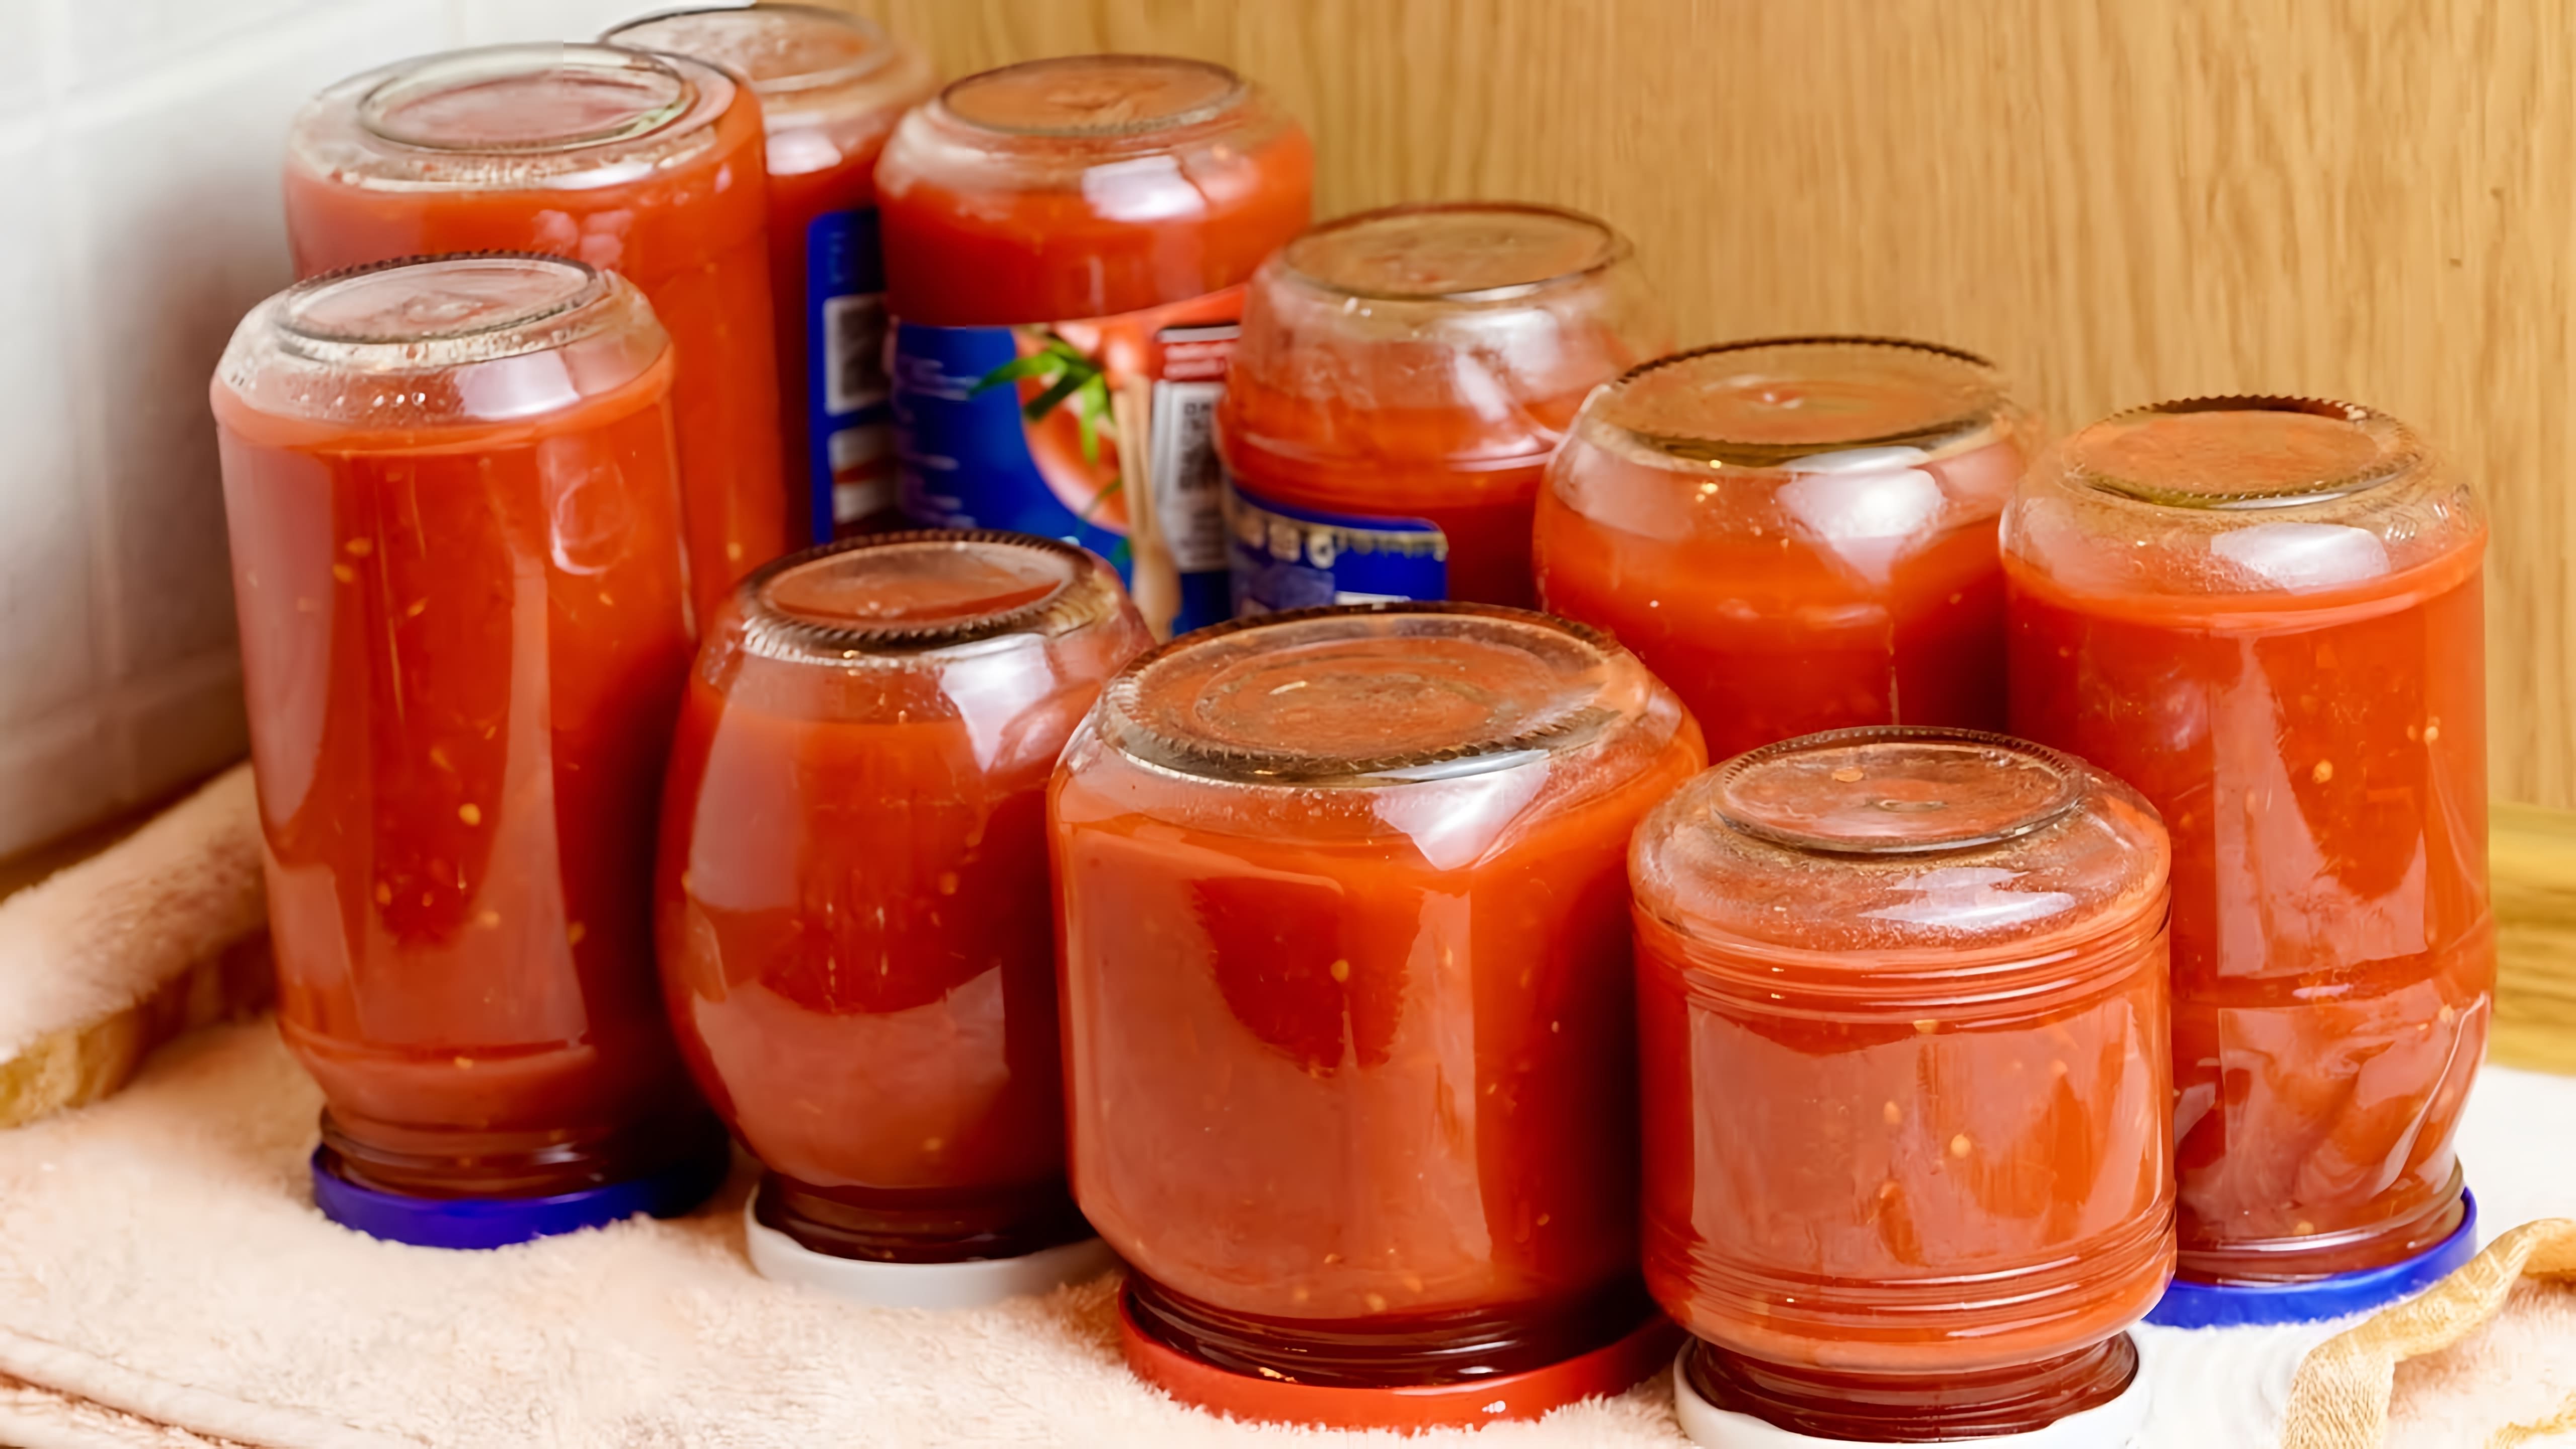 В этом видео демонстрируется процесс приготовления томатного соуса на зиму по простому рецепту